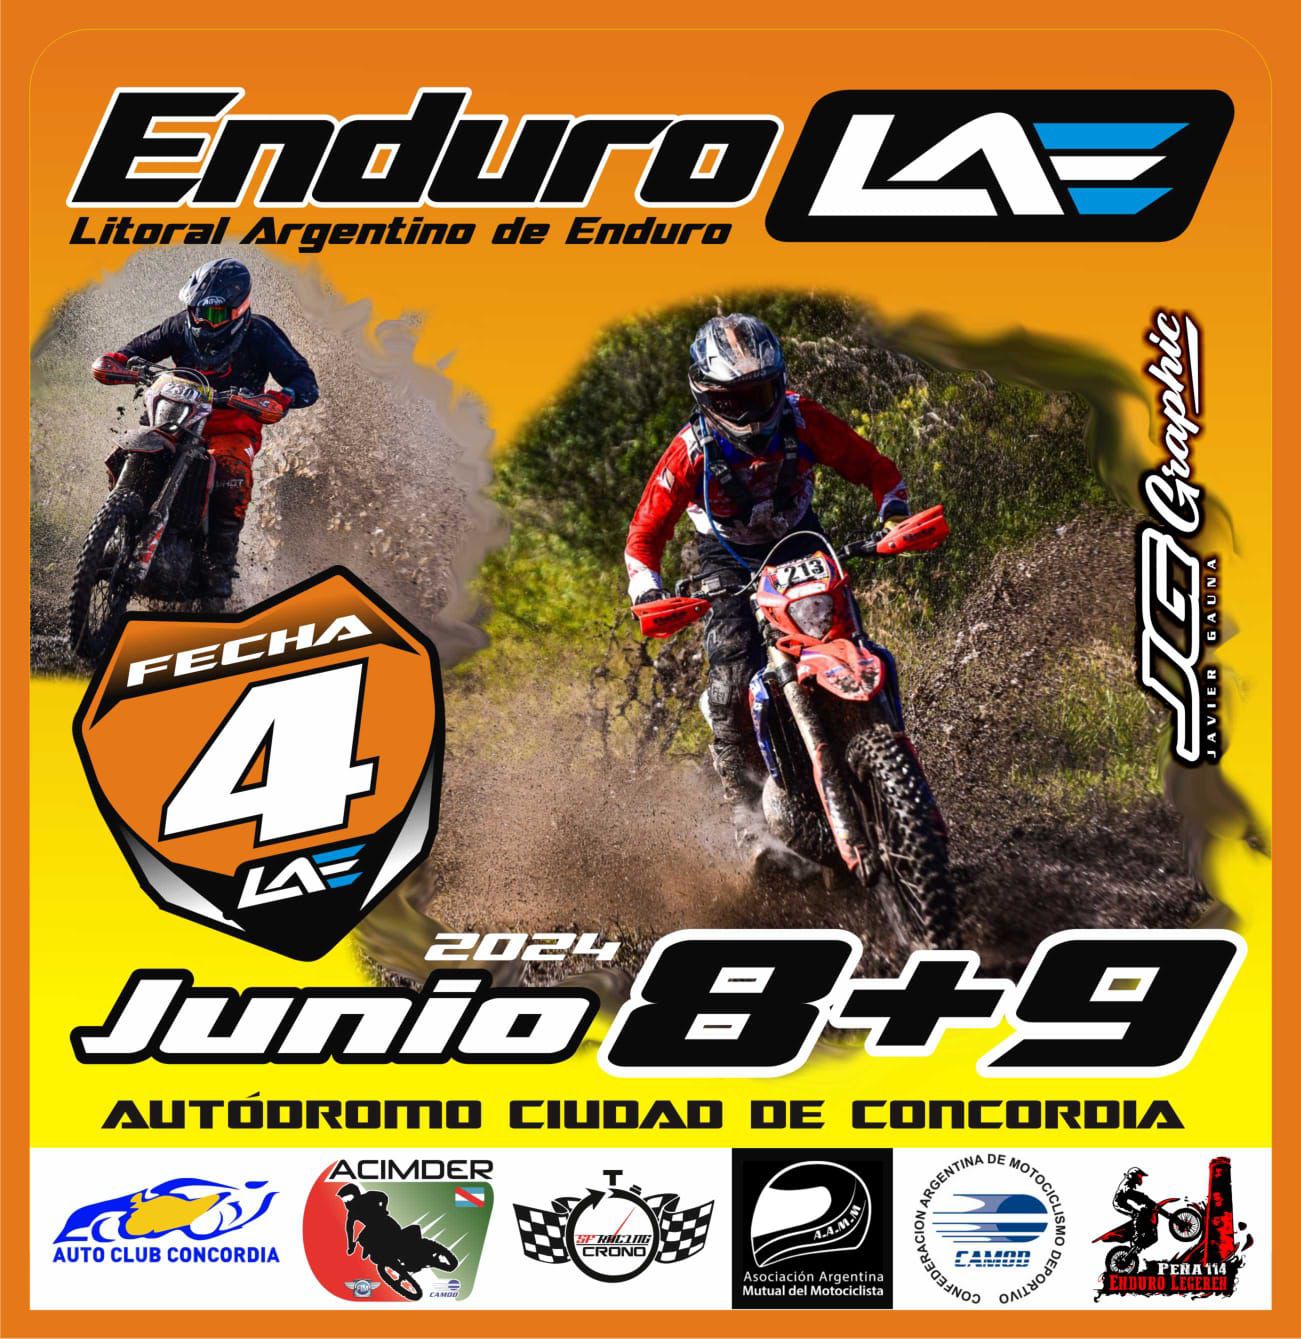 El próximo fin de semana se realiza la fecha 4 del Enduro LAE en el autódromo de Concordia